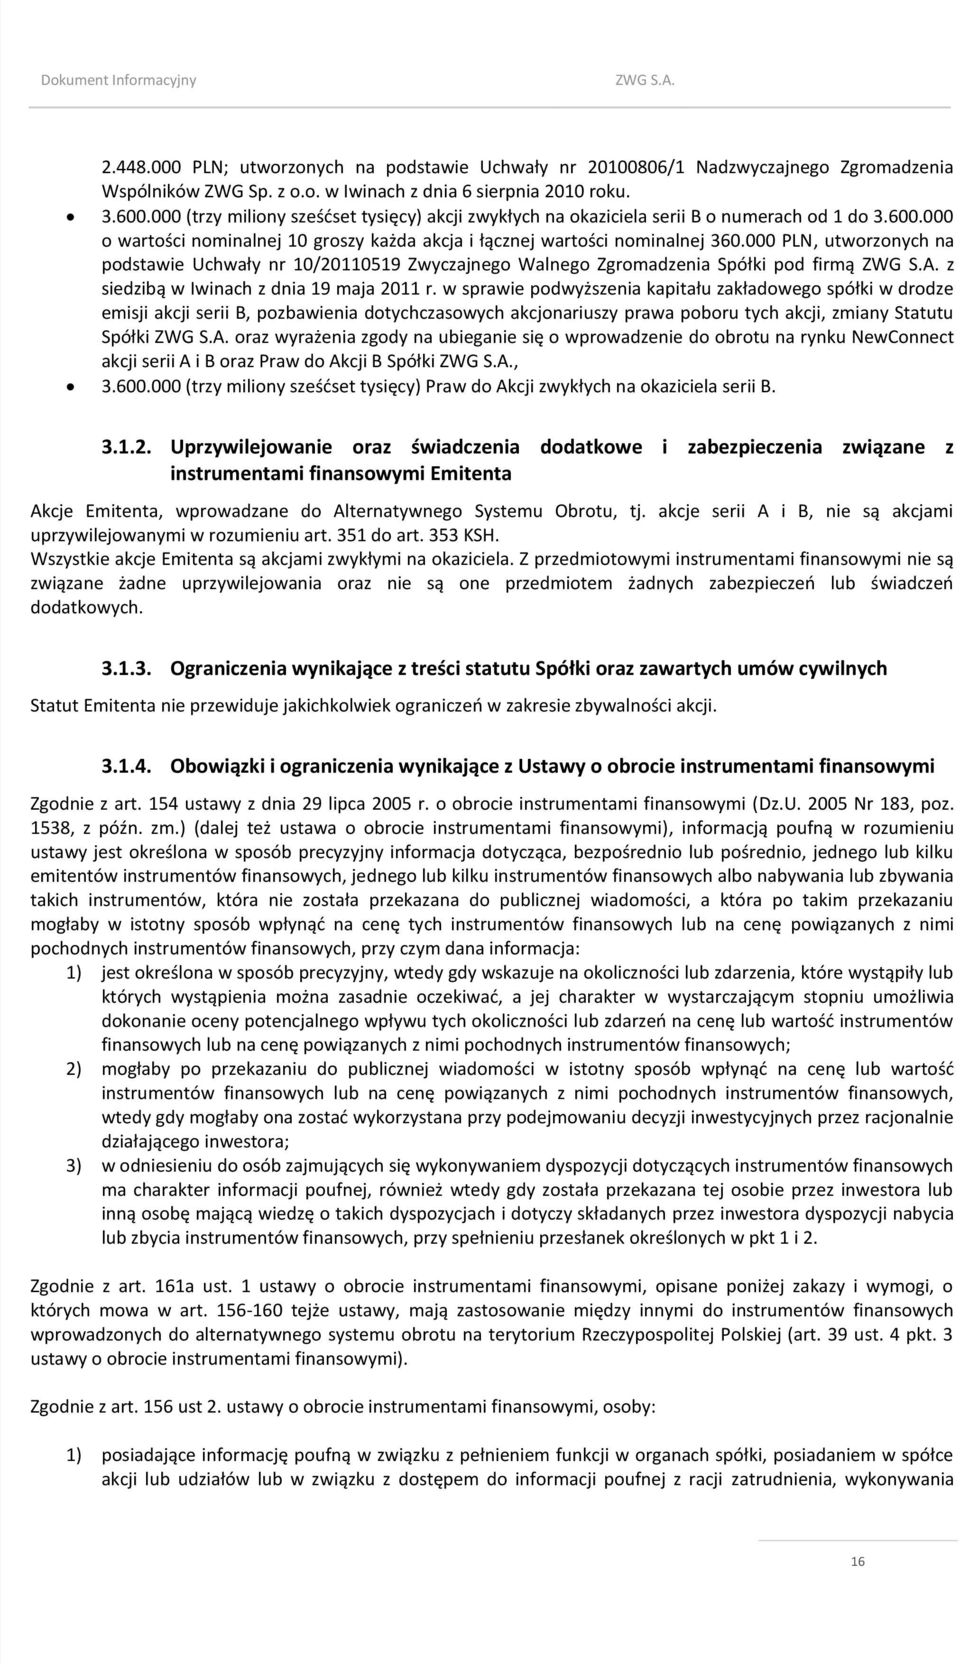 000 PLN, utworzonych na podstawie Uchwały nr 10/20110519 Zwyczajnego Walnego Zgromadzenia Spółki pod firmą z siedzibą w Iwinach z dnia 19 maja 2011 r.